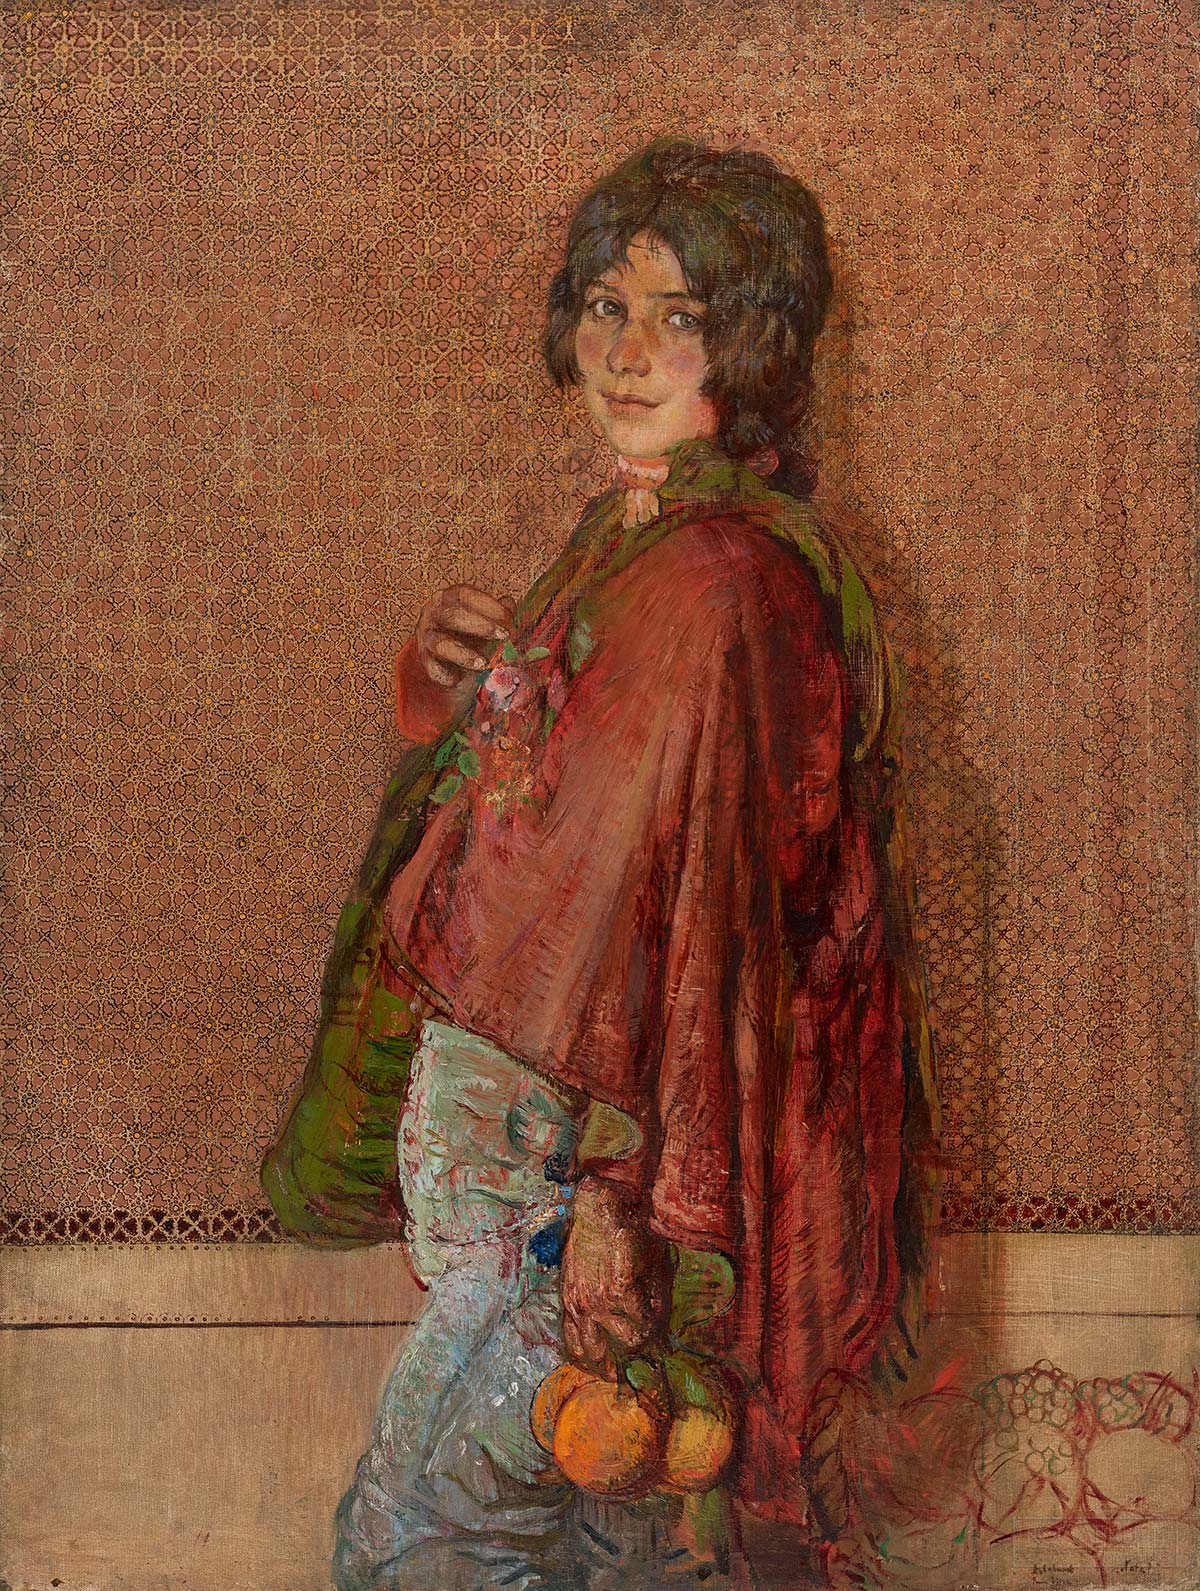 Савинов А. Мальчик-итальянец. 1911. Государственный Русский музей